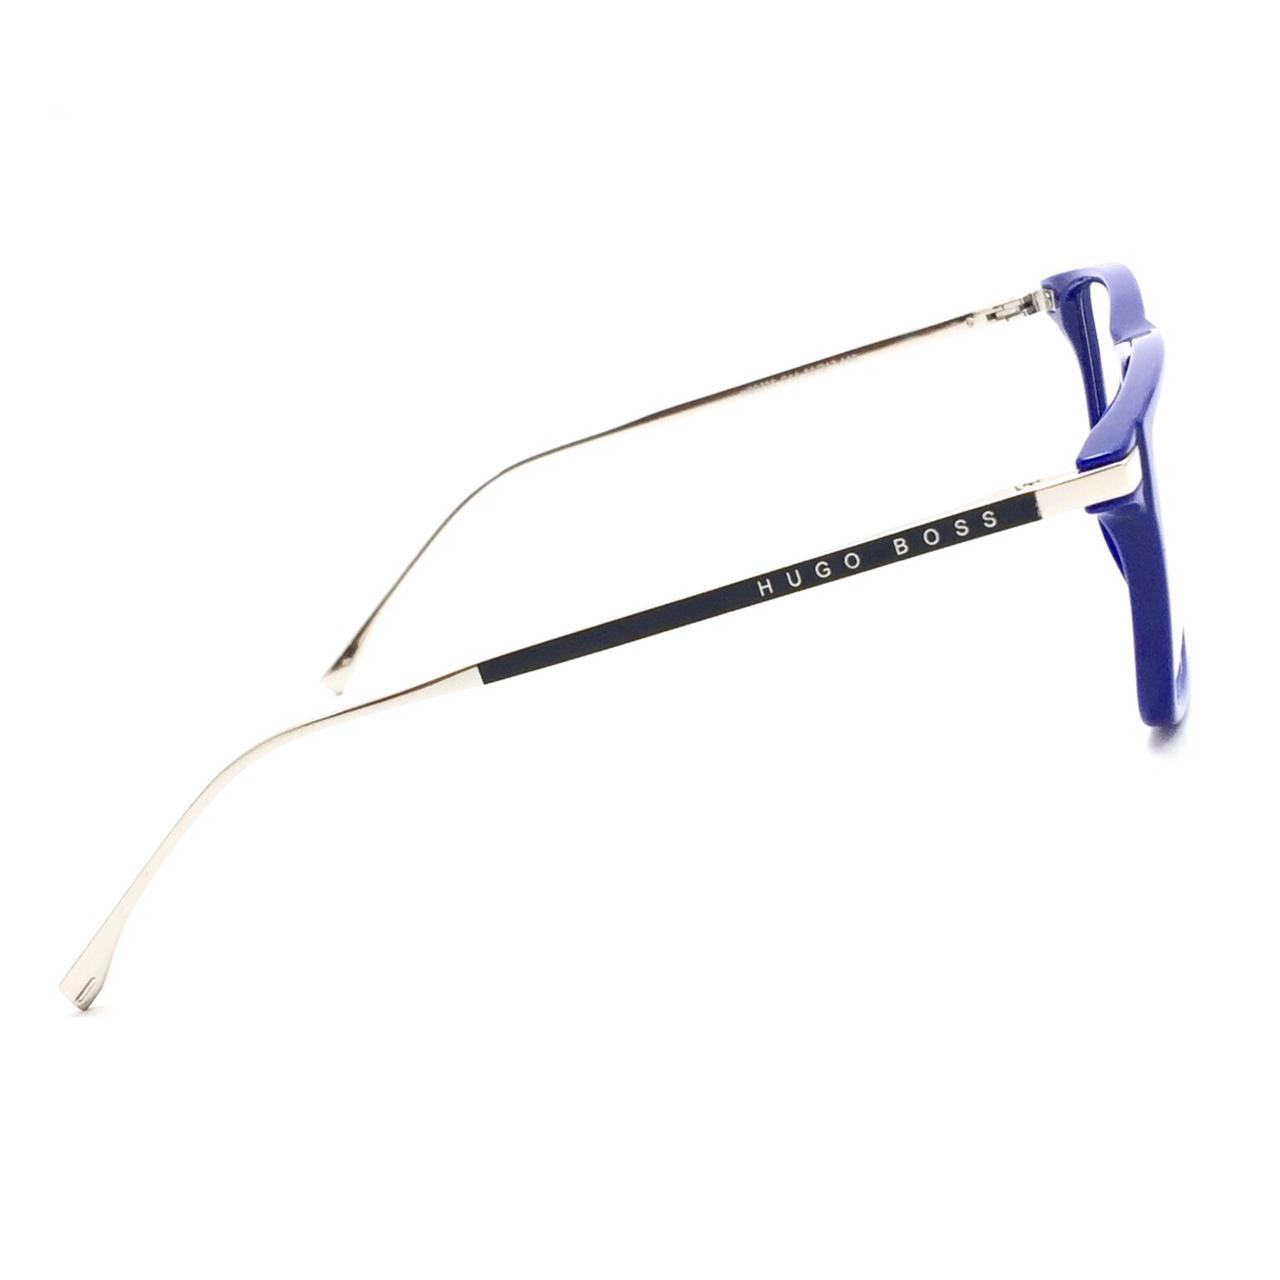 نظارة طبية مربعة الشكل من هوجو بوص HB0785